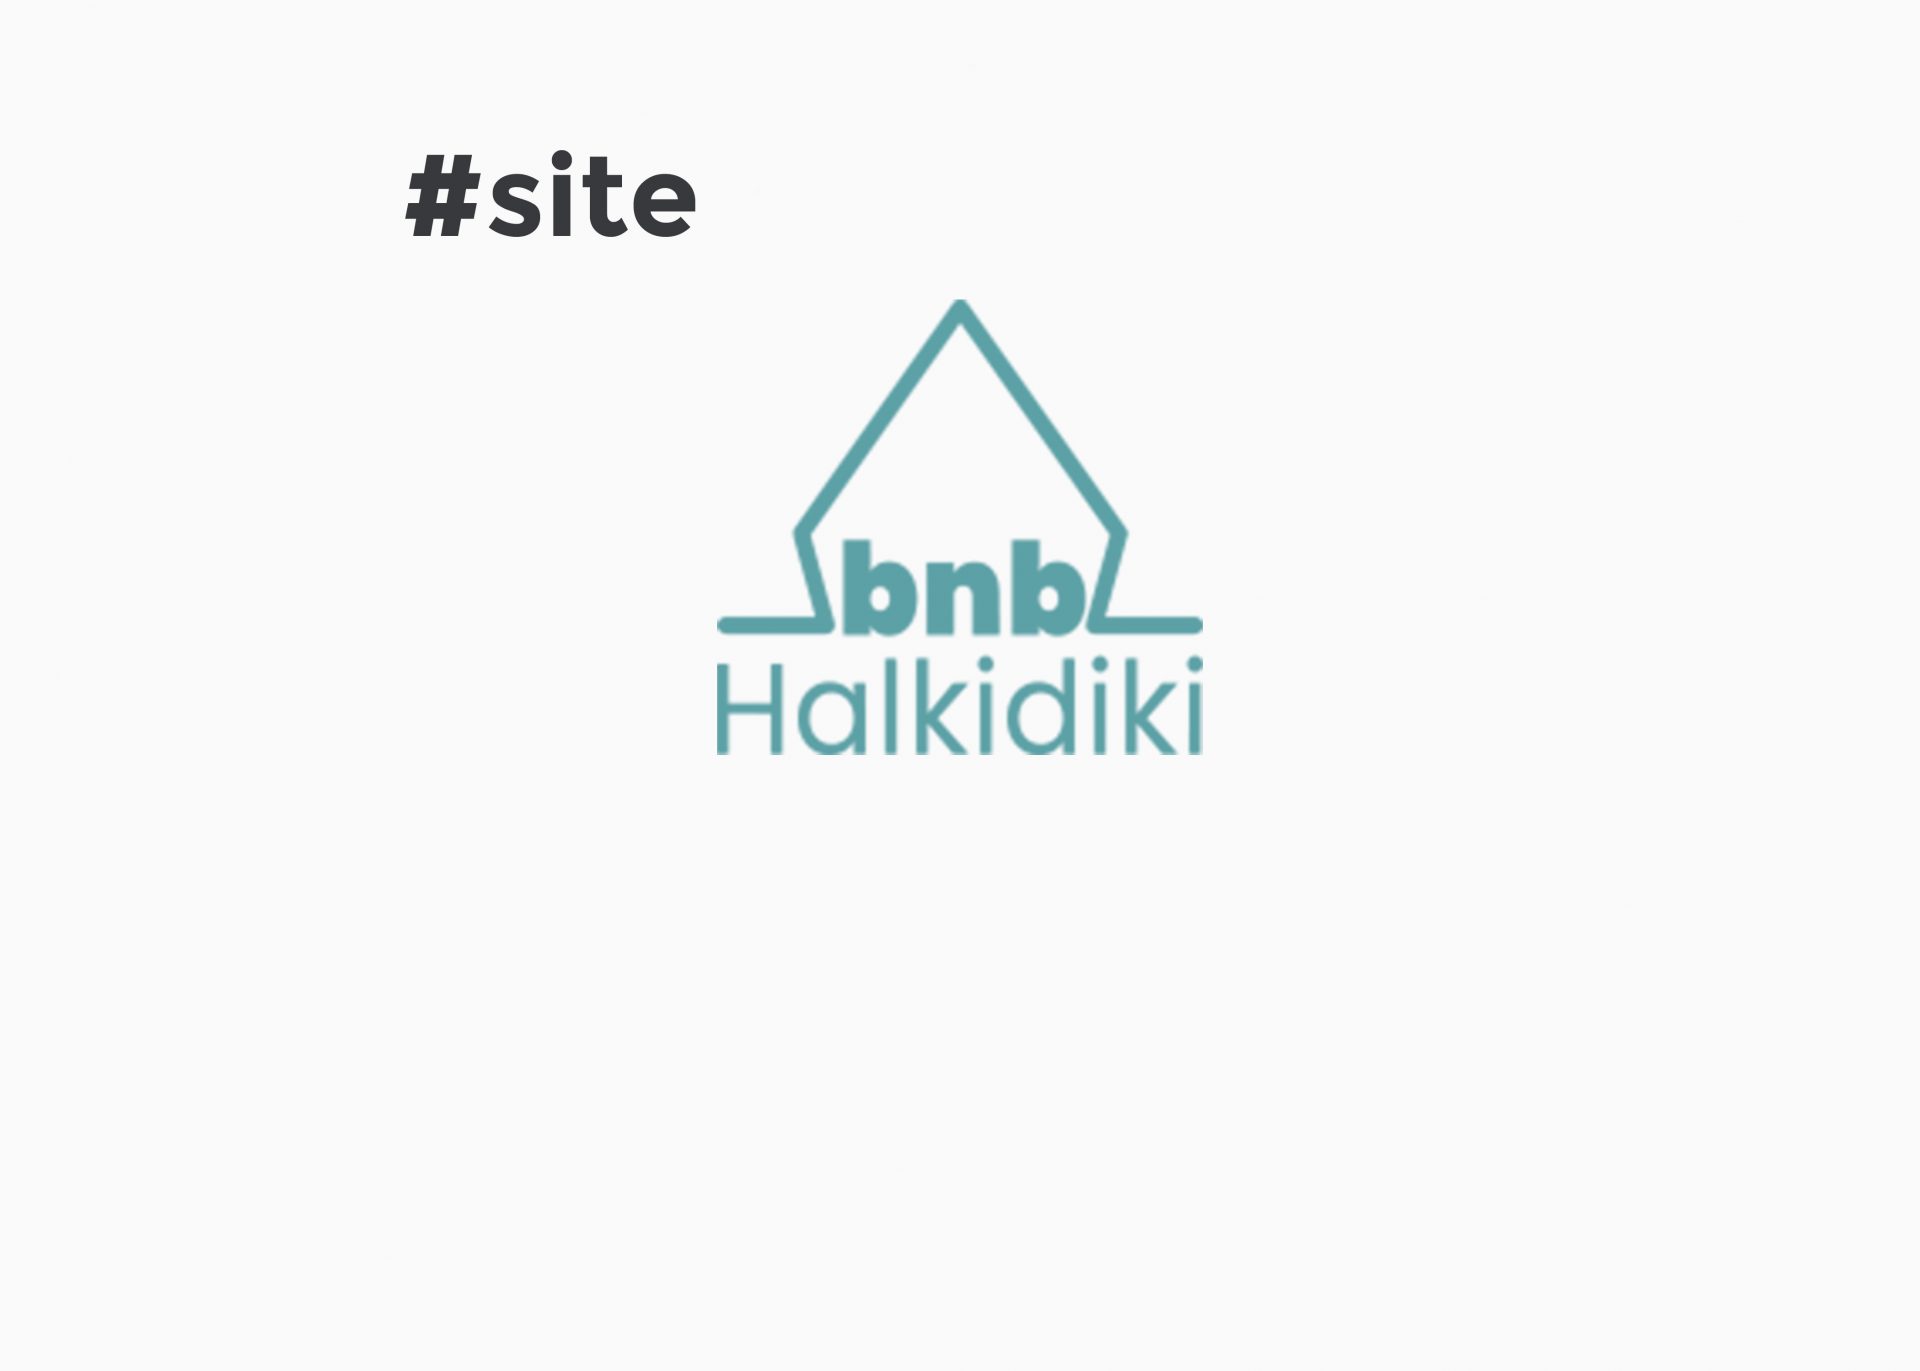 Site – halkidikibnb.gr